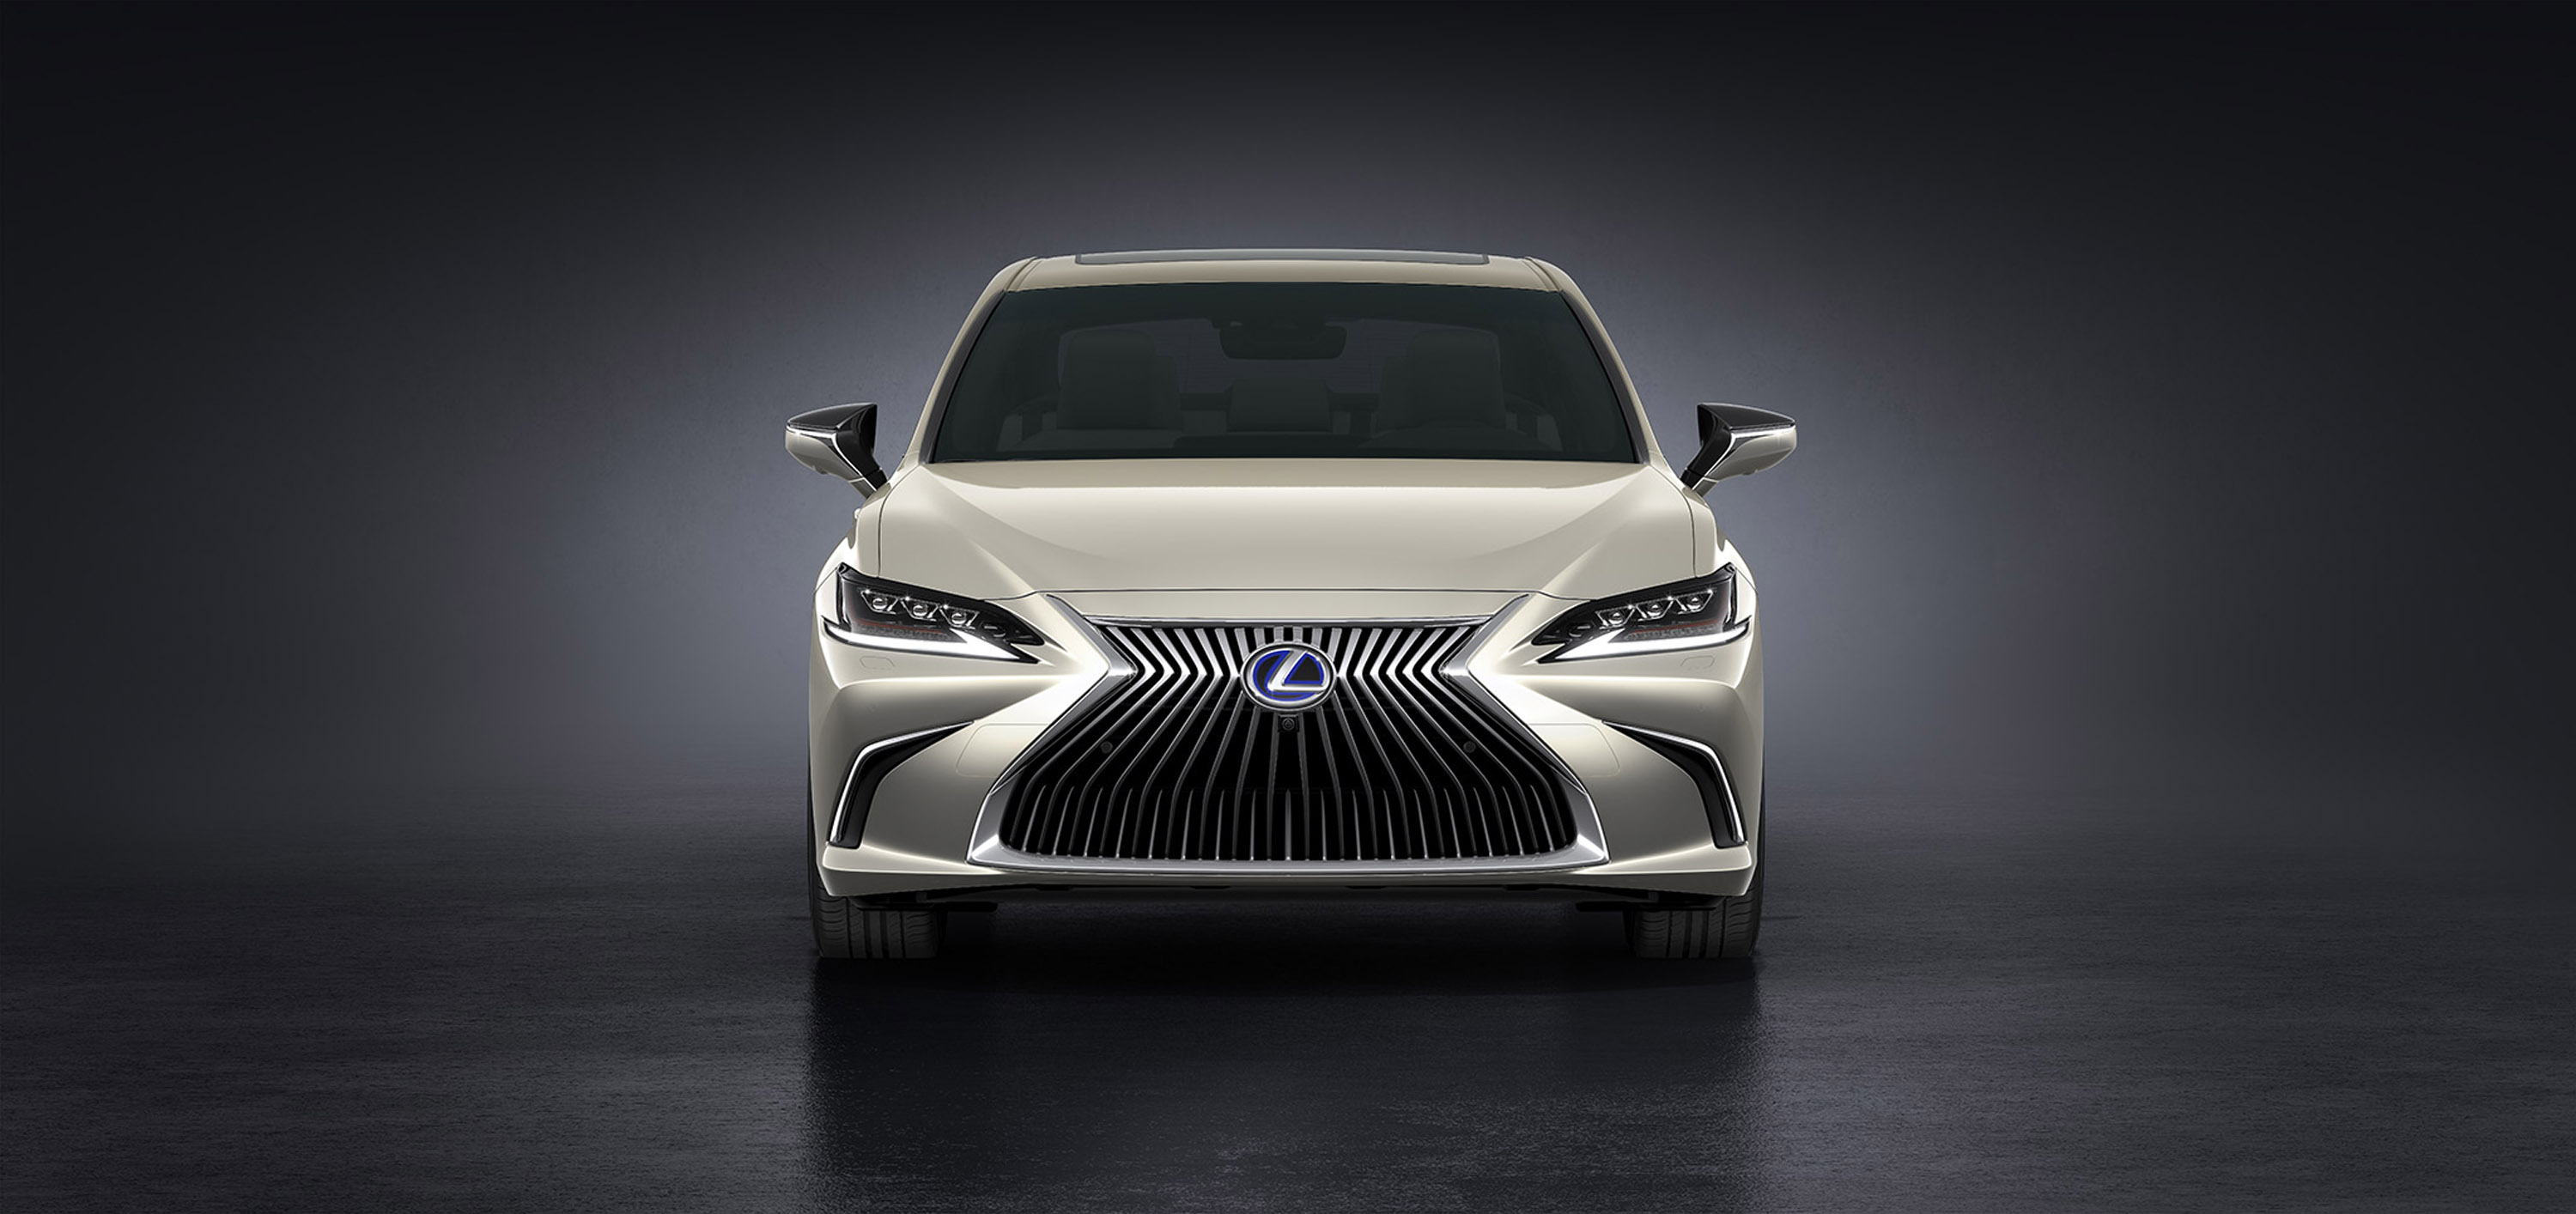 Lexus представляет роскошный автомобиль следующего поколения в лице среднеразмерного седана ES.